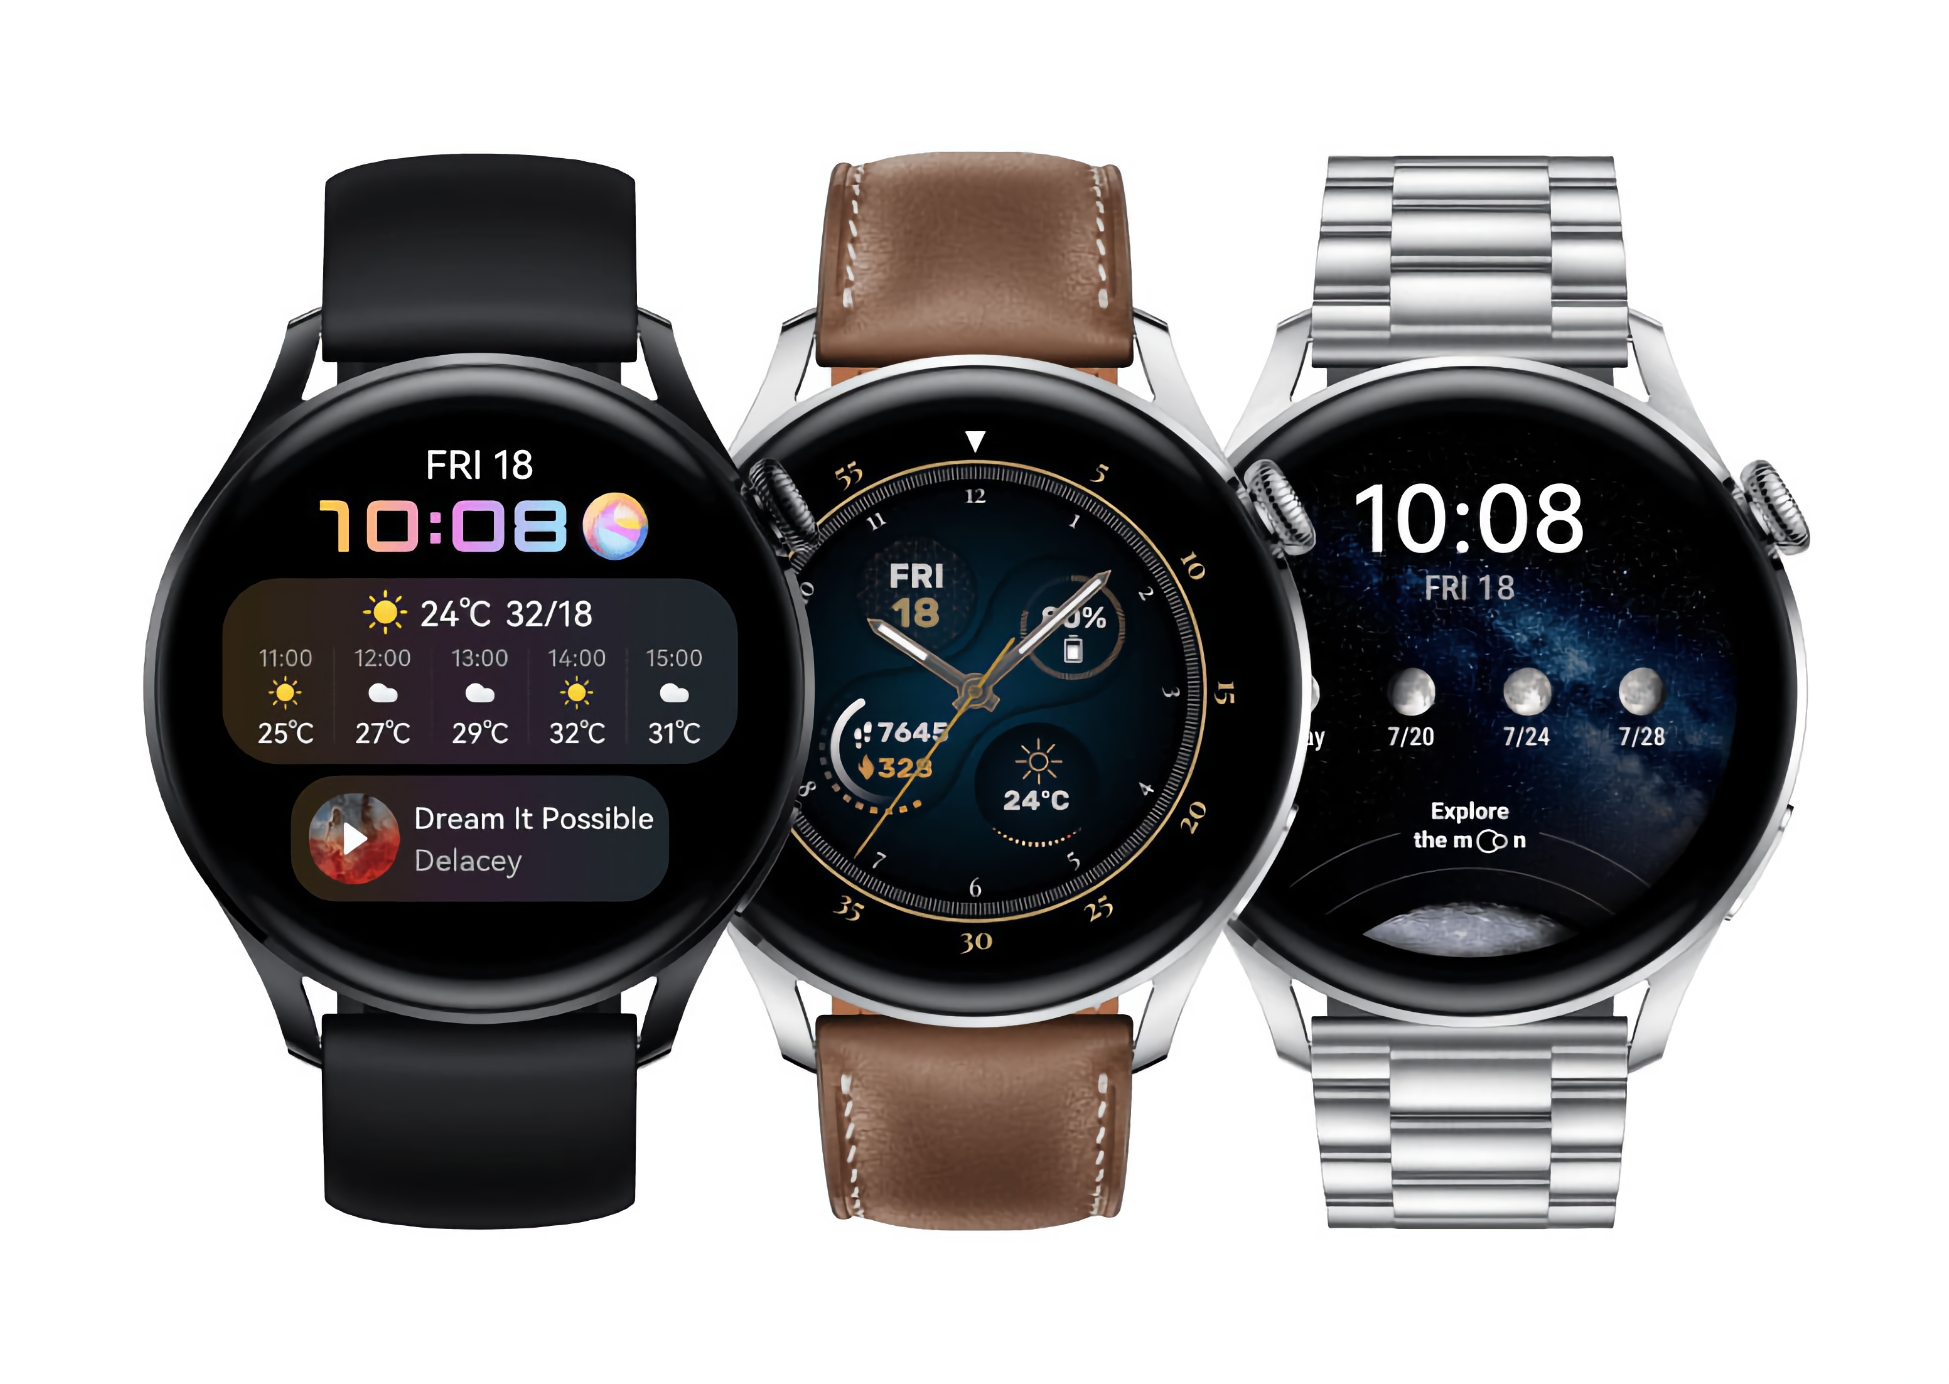 L'orologio intelligente Huawei Watch 3 Pro con l'aggiornamento HarmonyOS 2.0.0.197 ha ricevuto nuove funzionalità